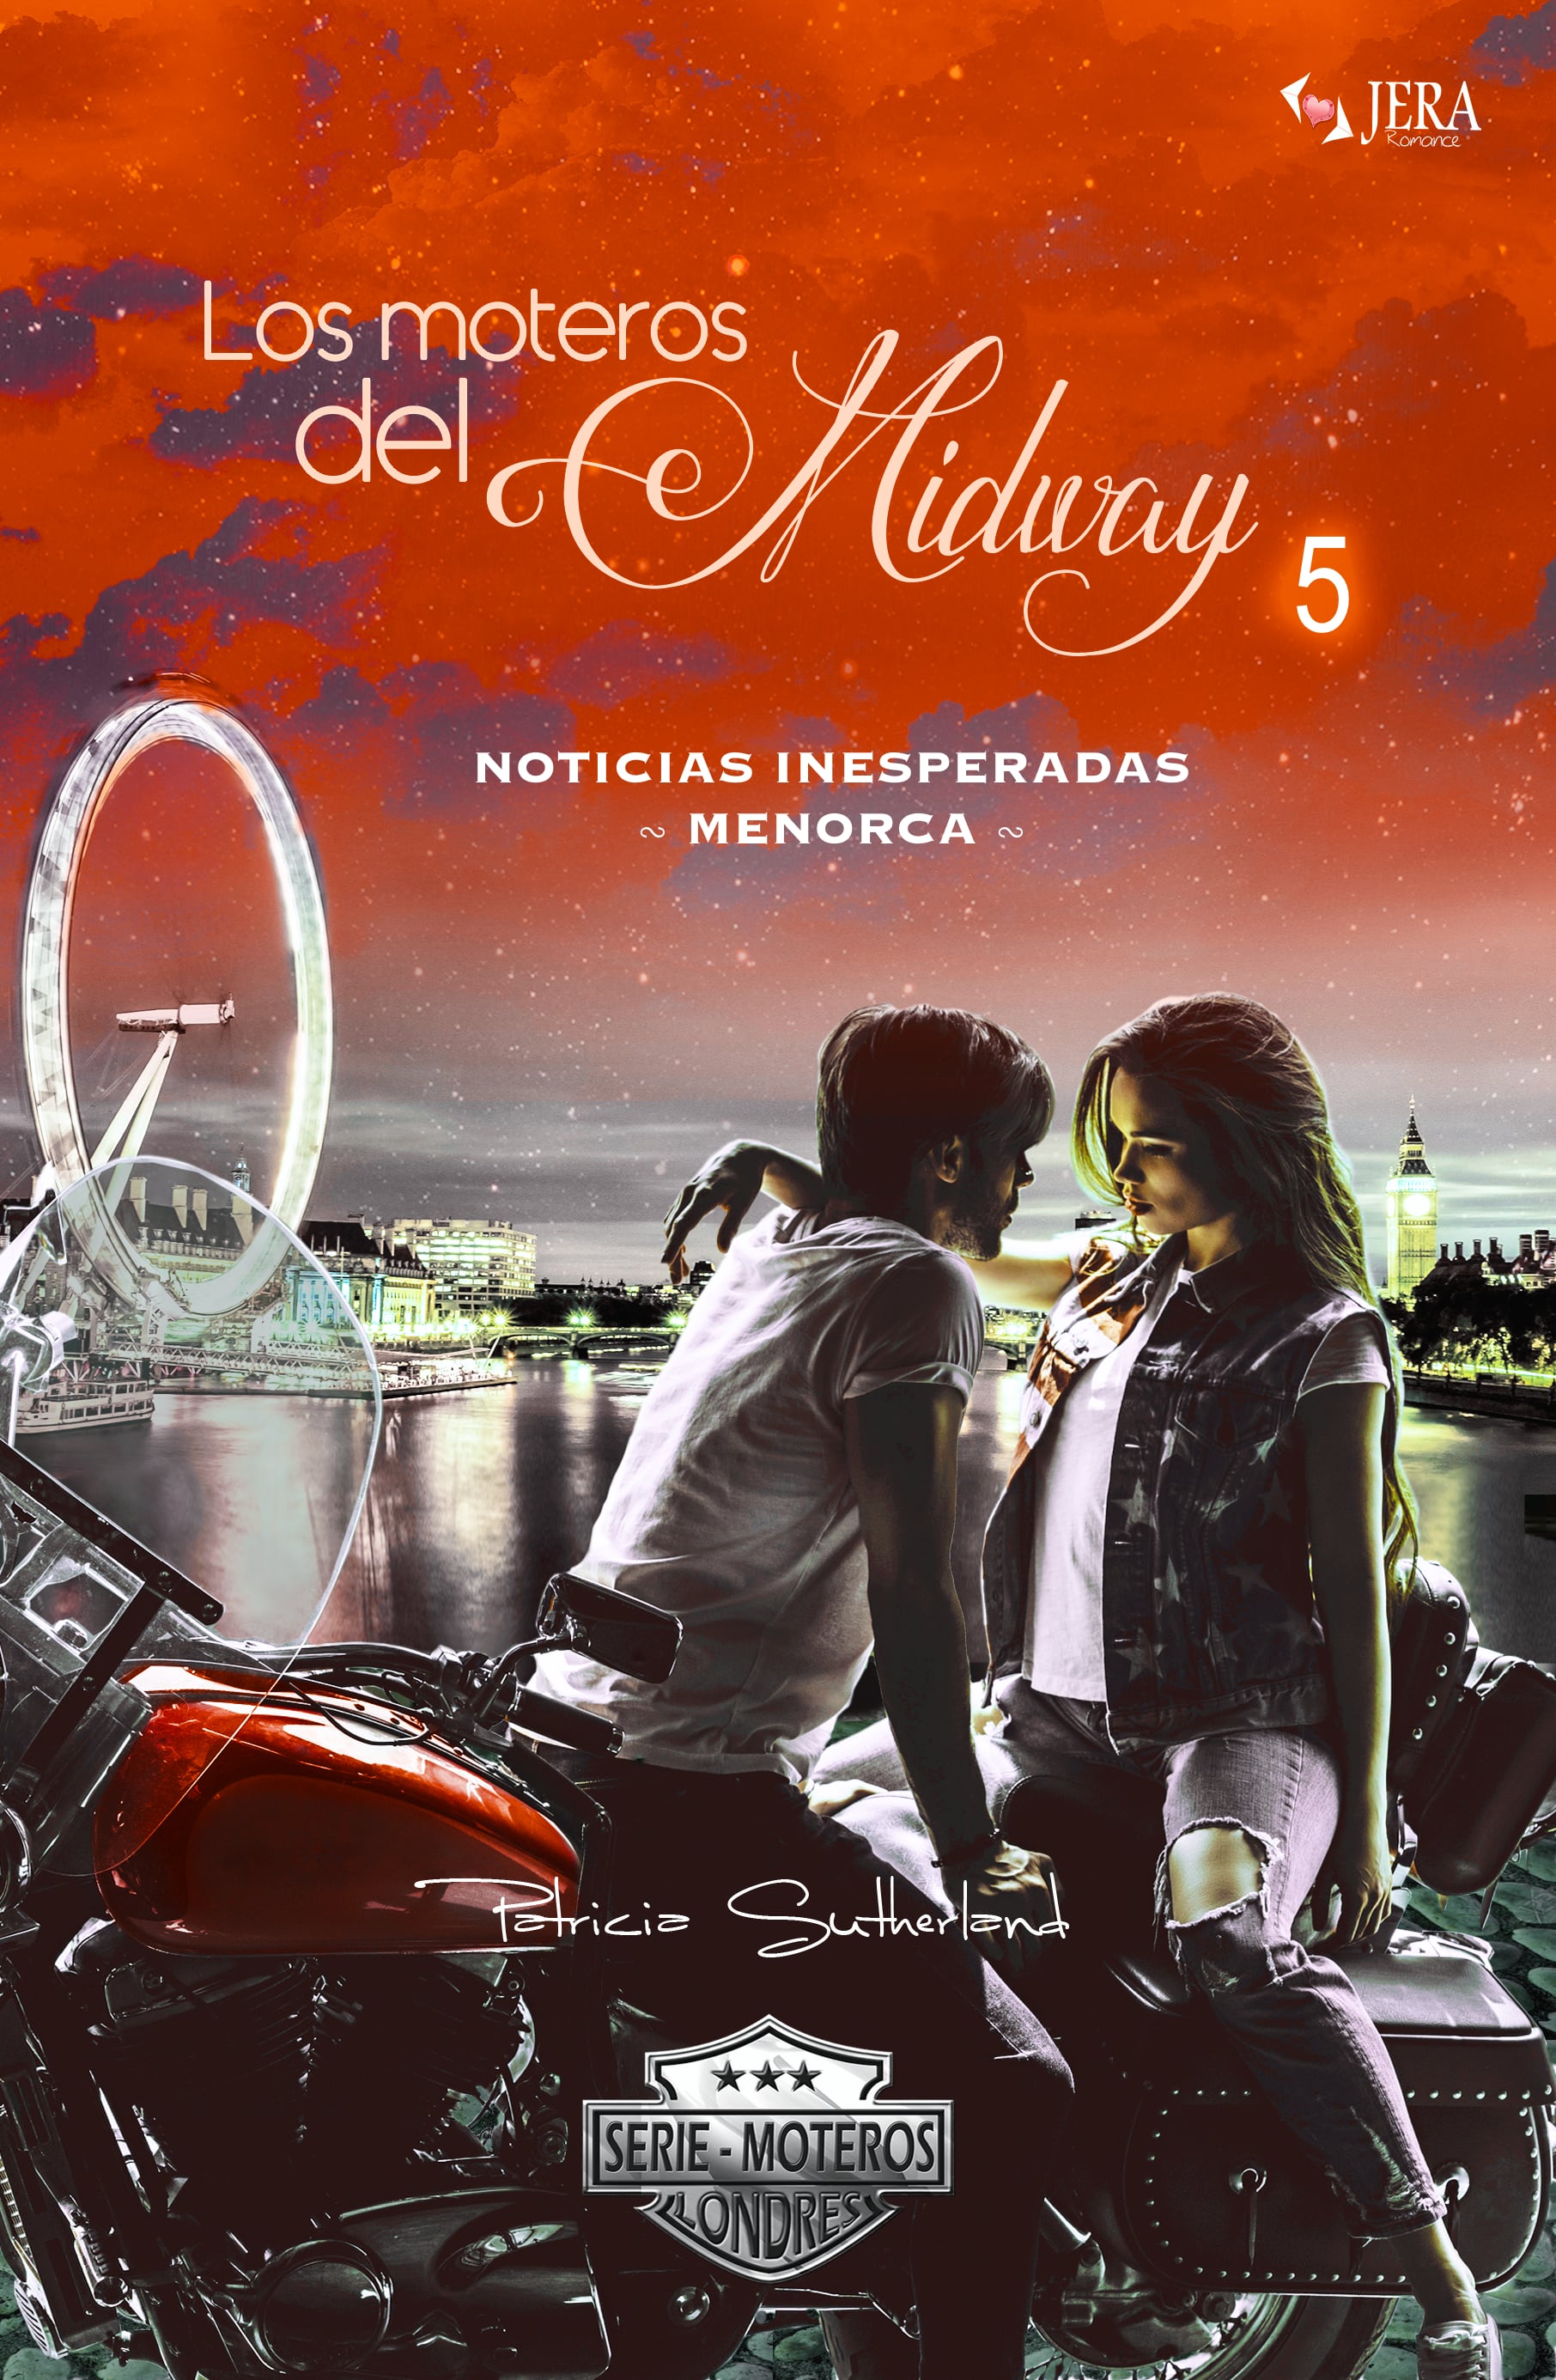 Los moteros del MidWay, 5. Noticias inesperadas. Menorca. Extras Serie Moteros 10